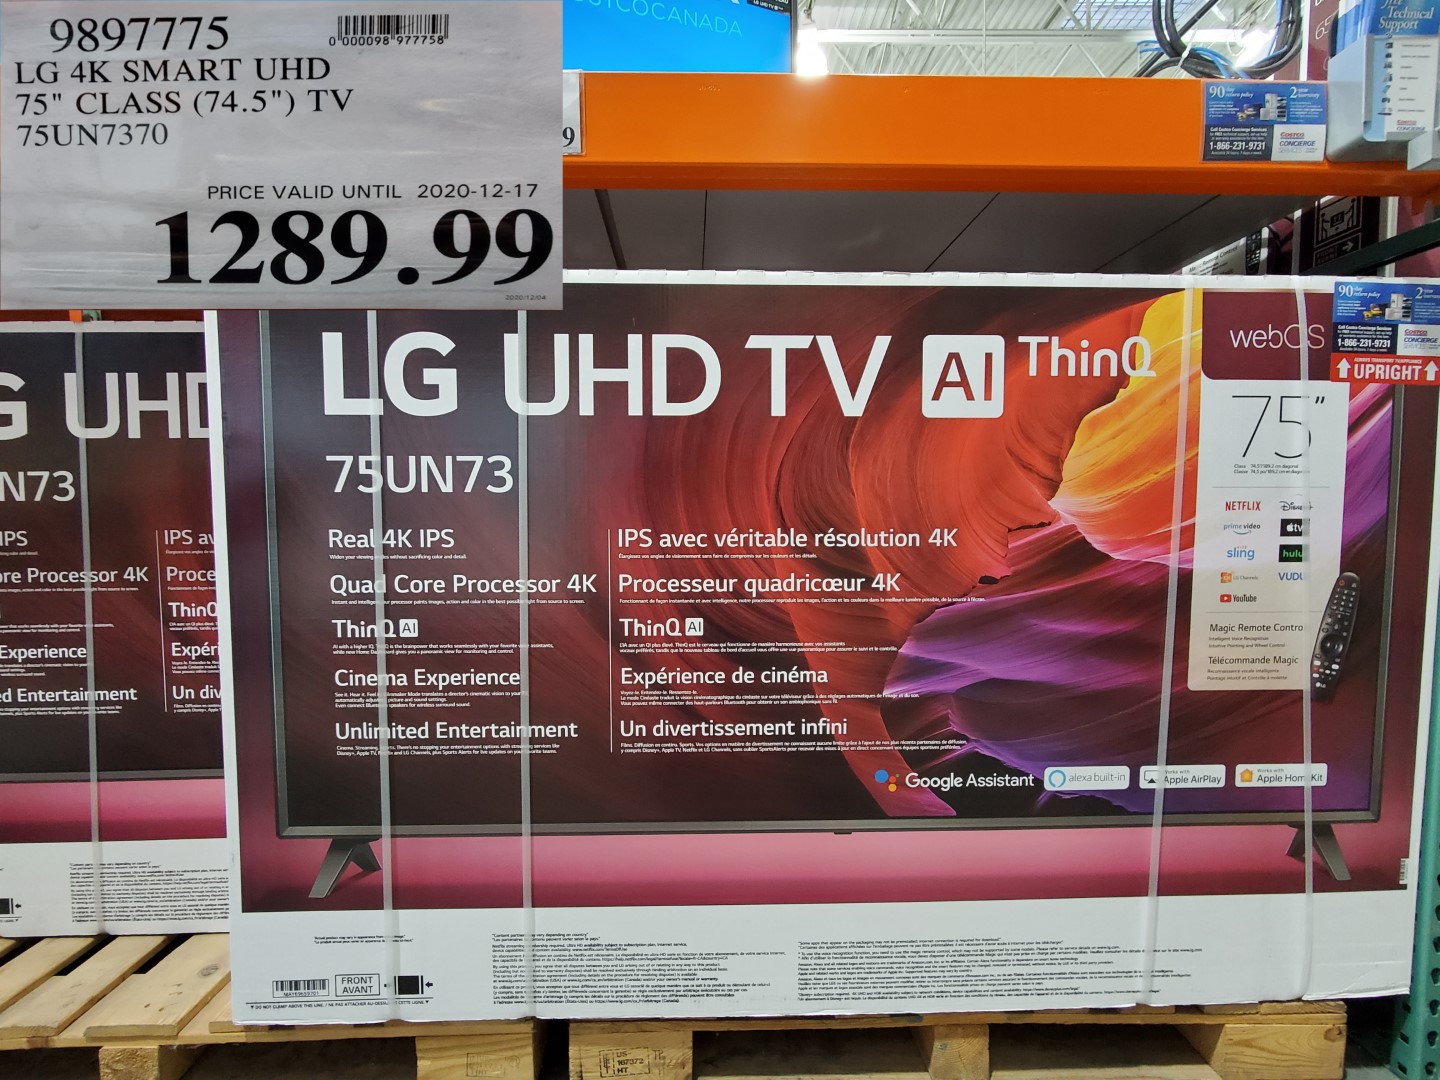 LG UHD TV AI Thinq